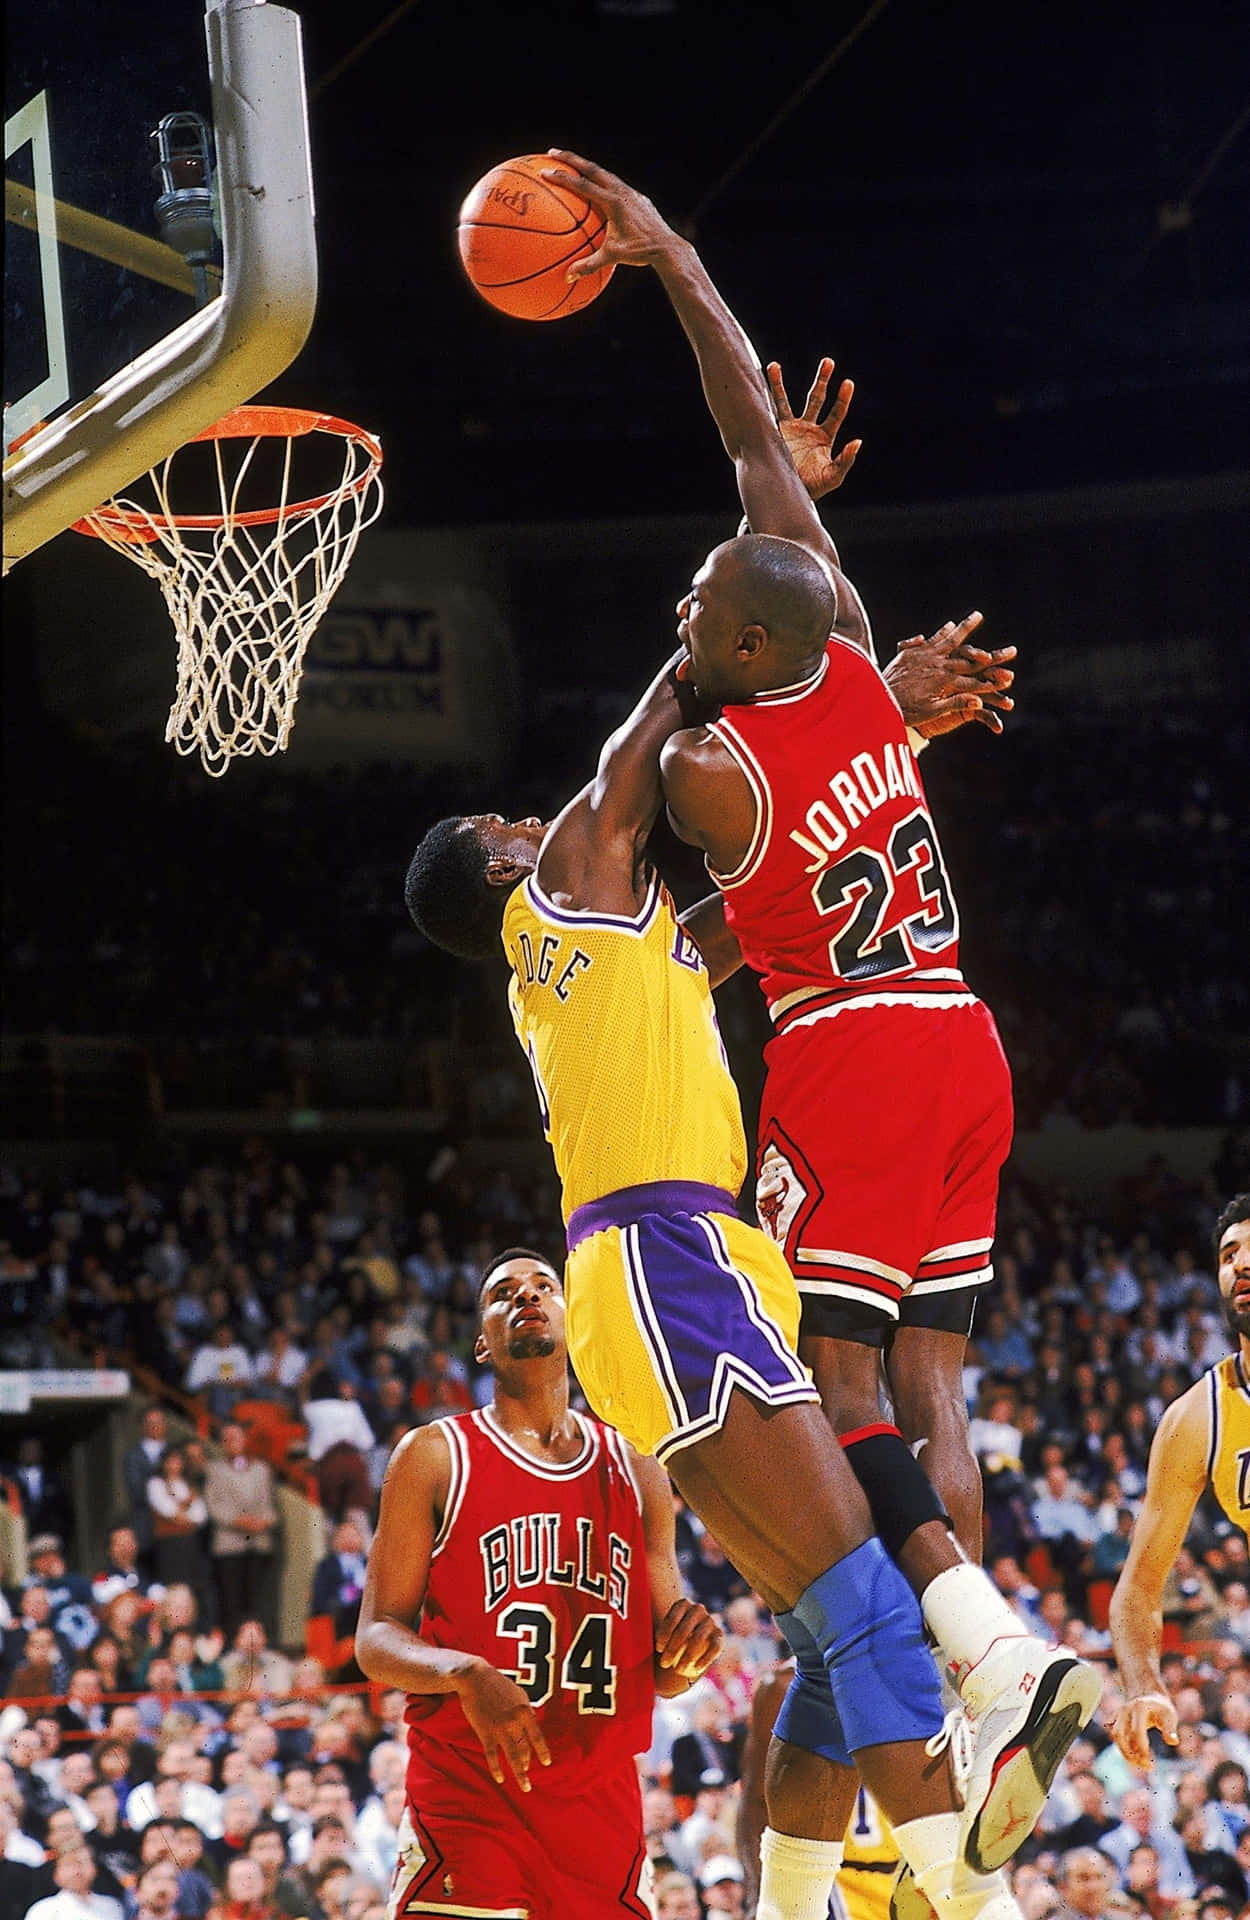 Air Jordan Soaring High: Celebrating Basketball Legend Michael Jordan On Iphone Wallpaper Wallpaper